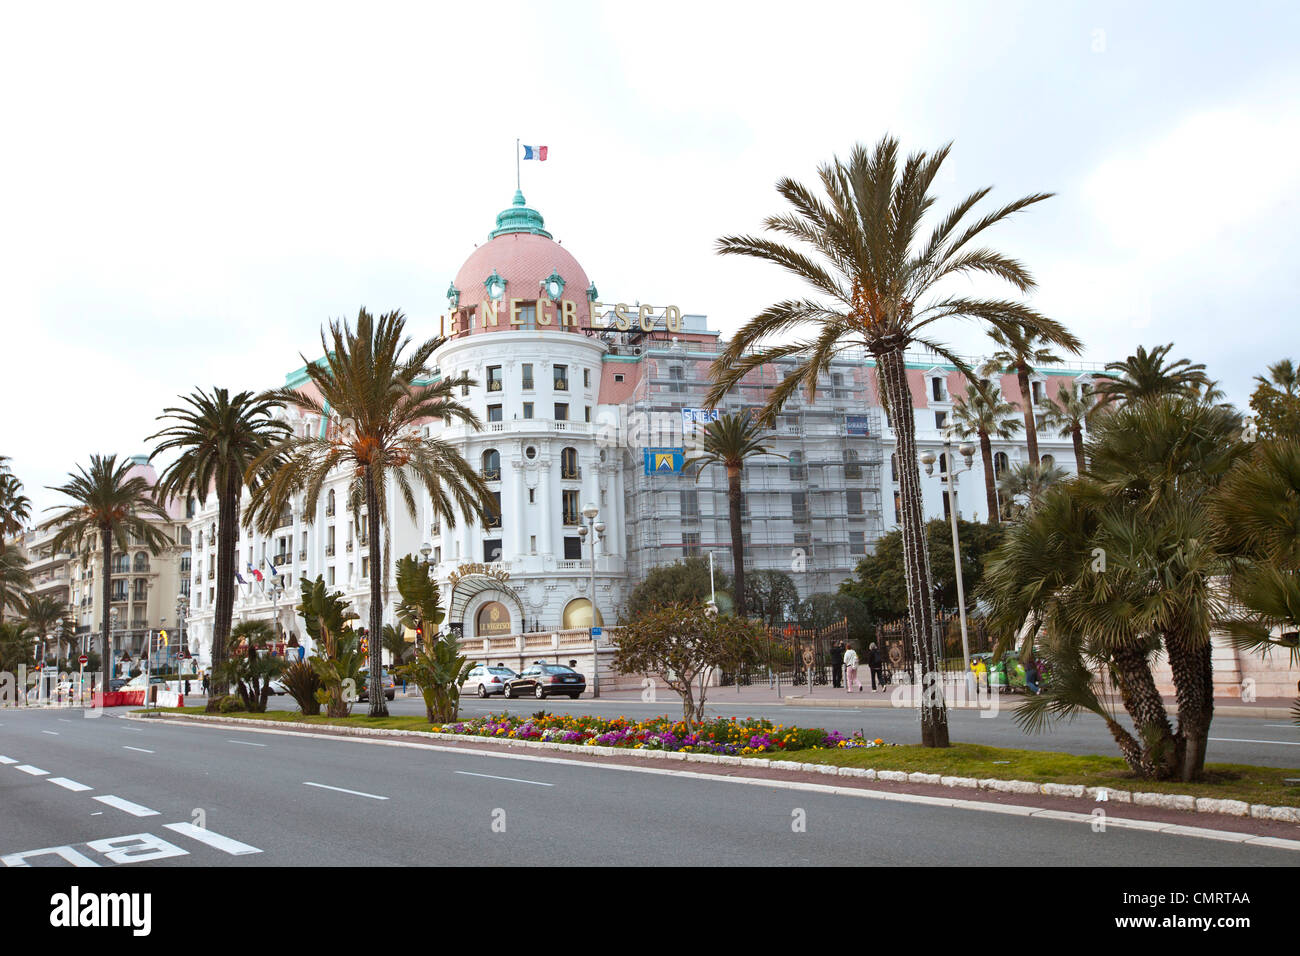 Das Hotel Negresco Nizza Frankreich. Eingang, Promenade des Anglais. Französische luxuriösem Hotel. 124684 Nice Negresco Stockfoto